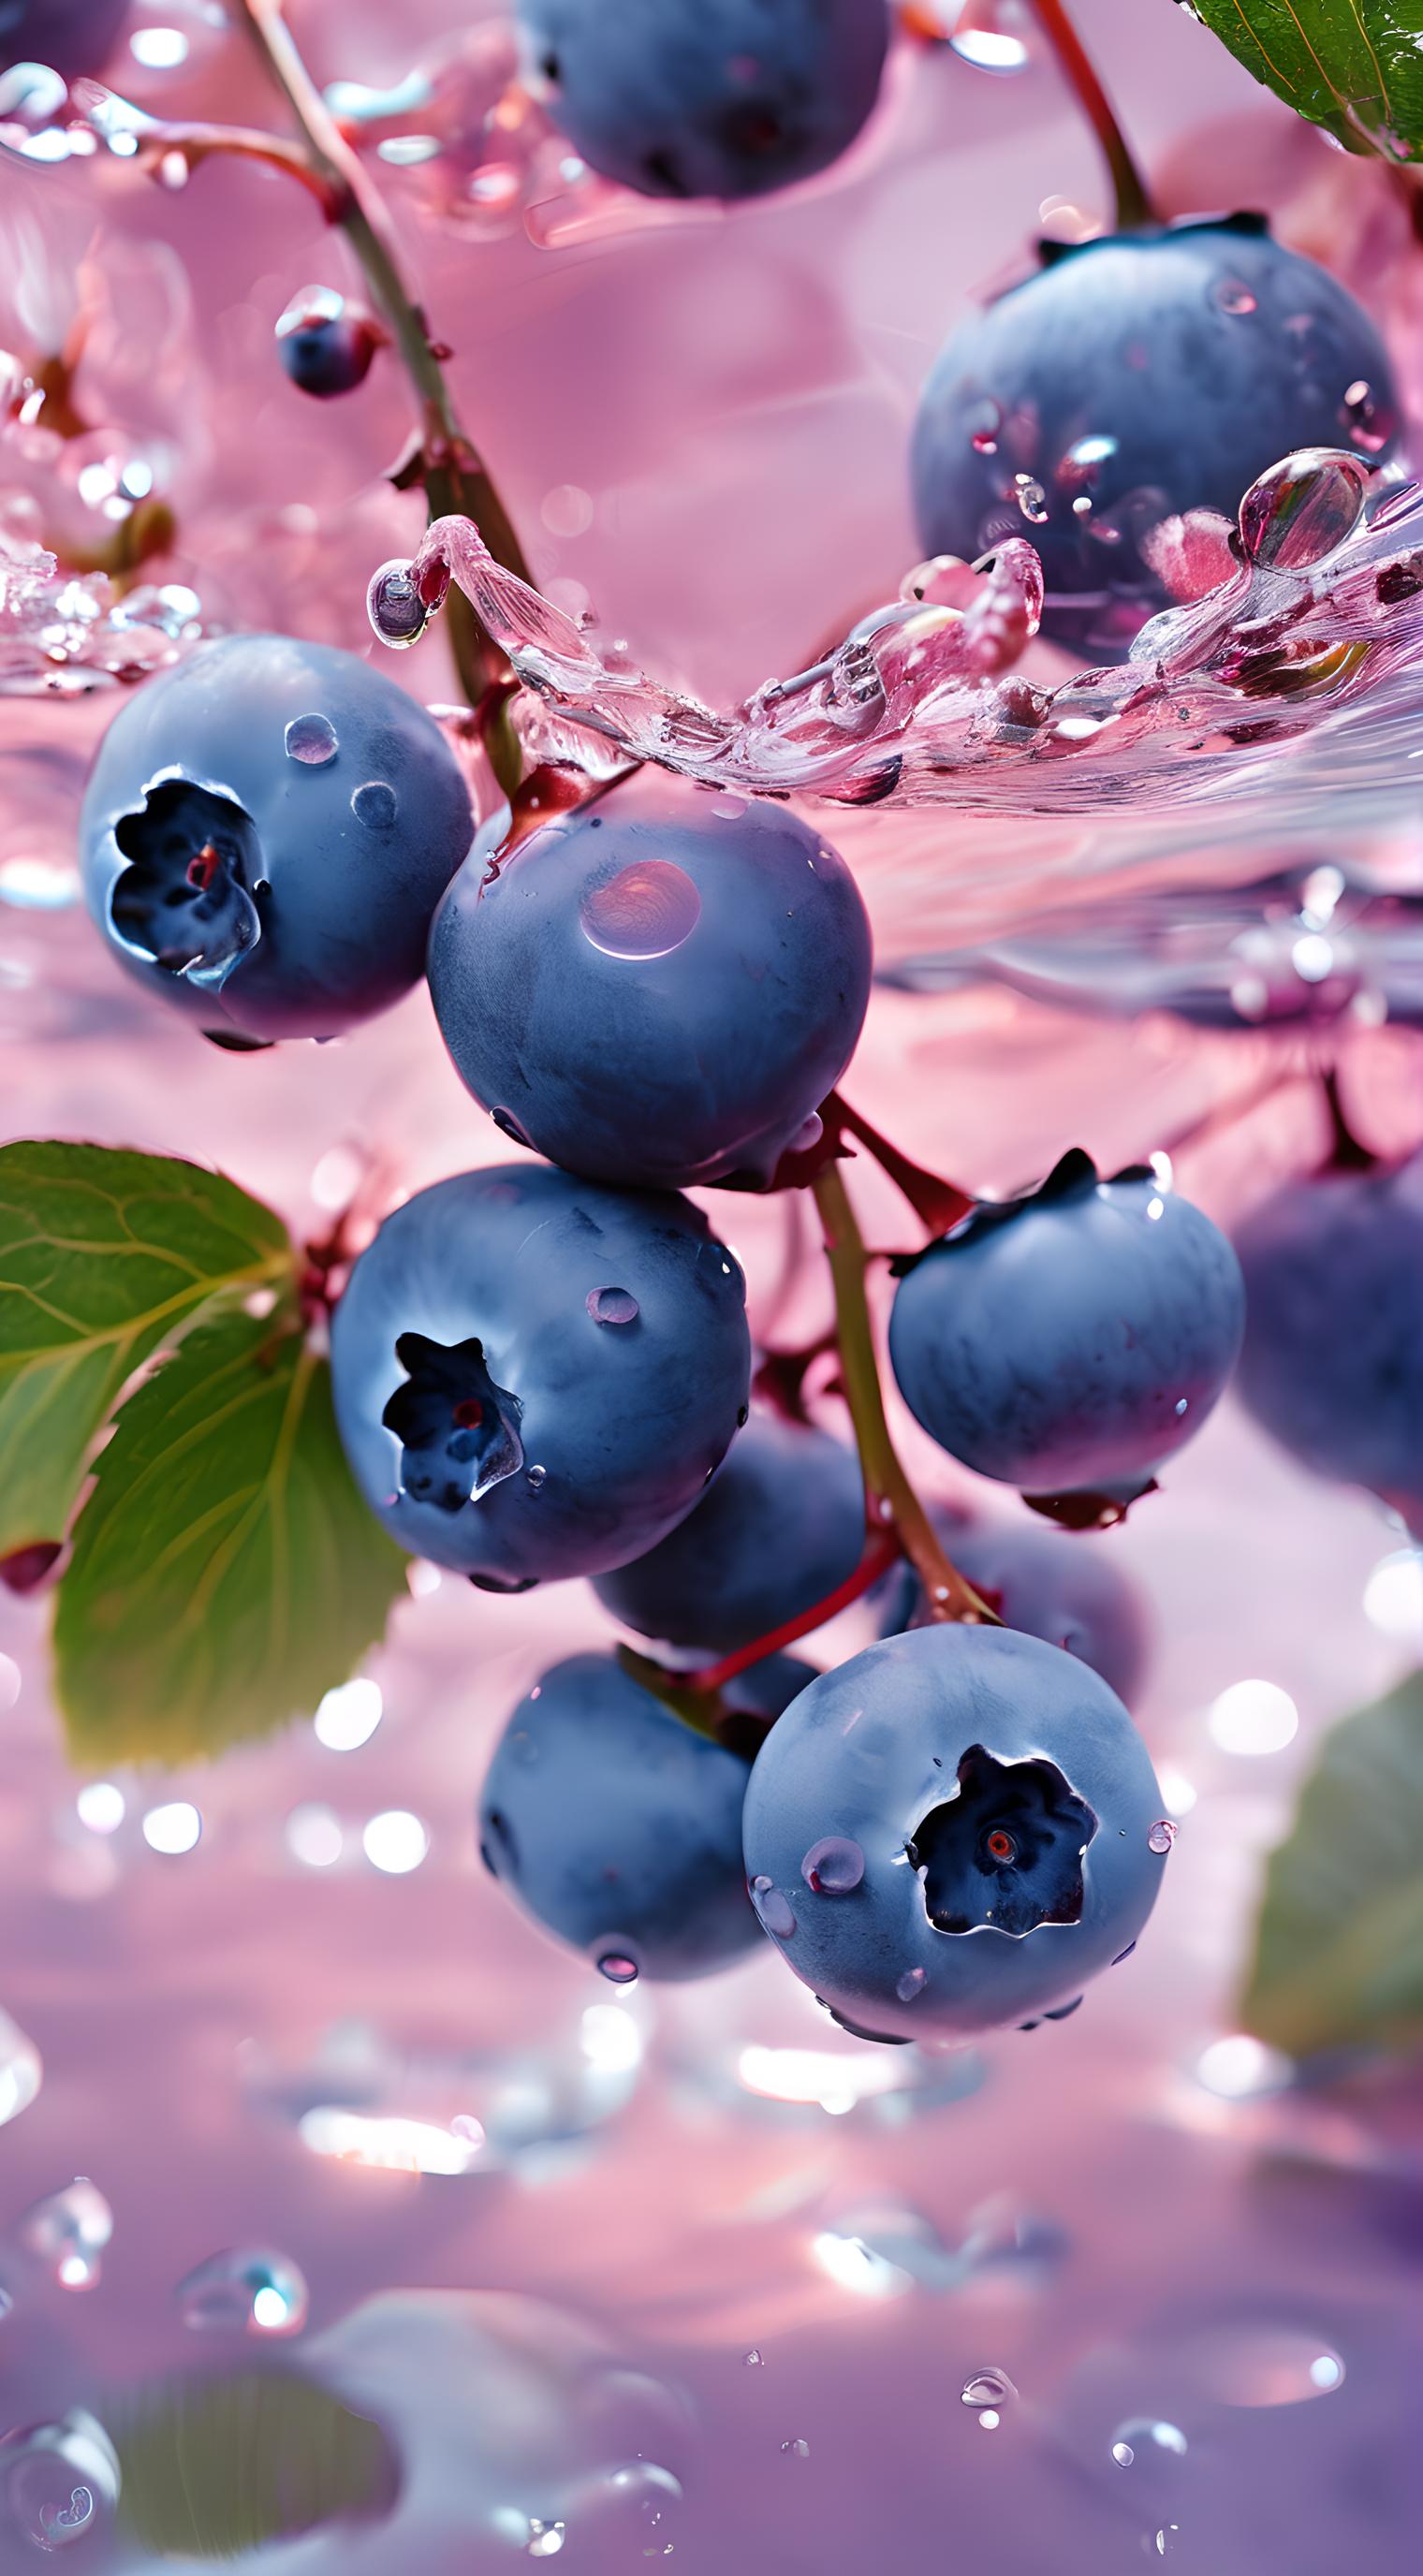 落入水中的蓝莓果